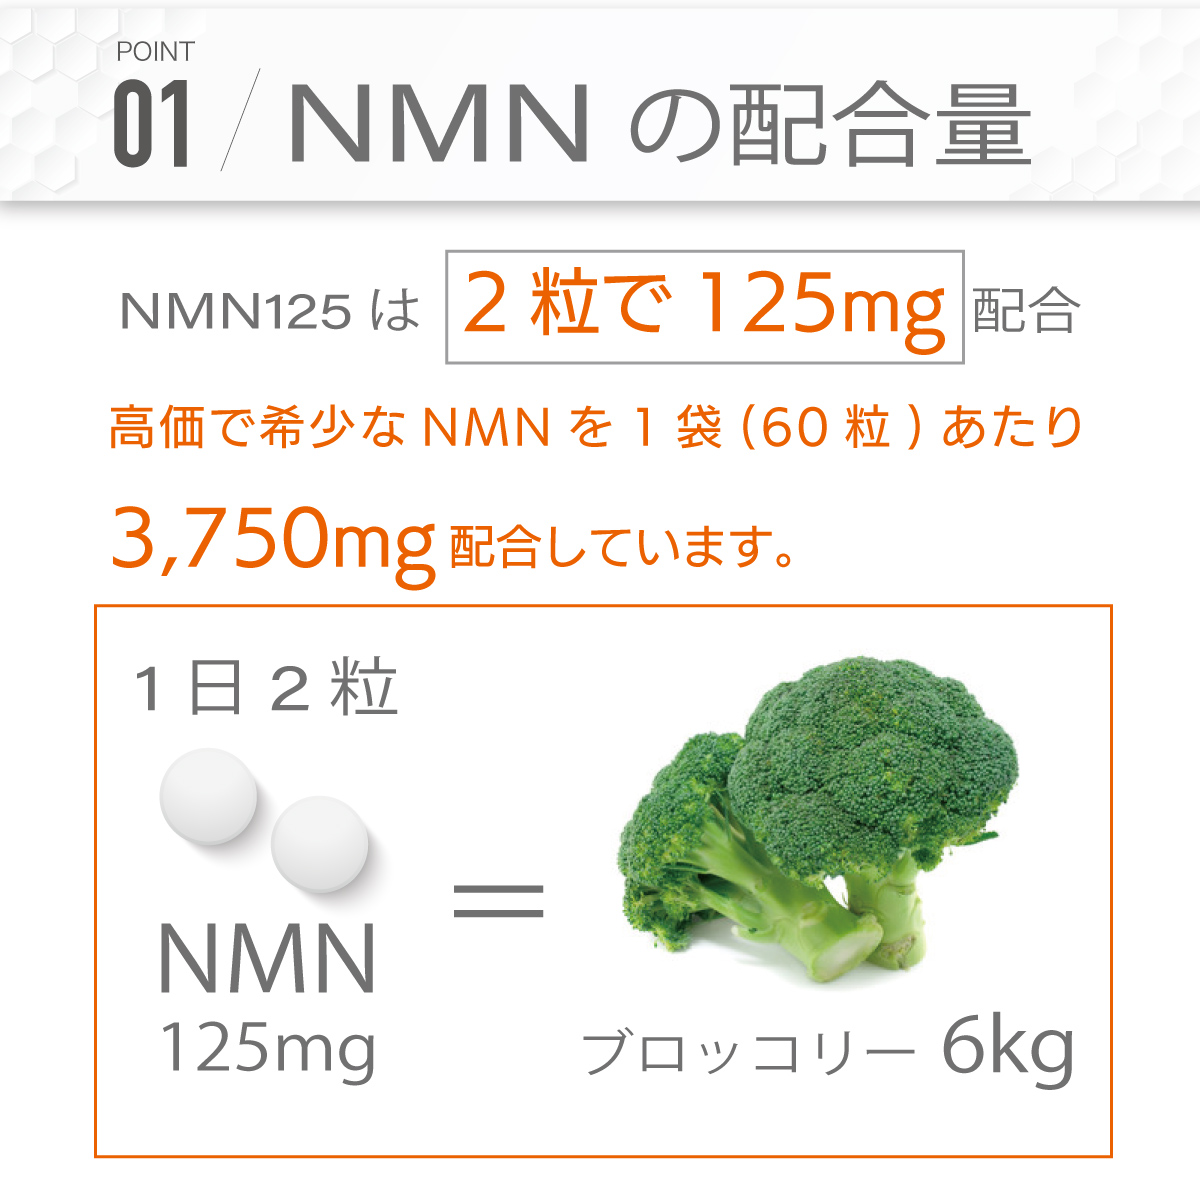 超激得SALE ＮＭＮ125 × 3袋 3ヵ月分 1袋に3,750mg ダイエット サプリ 日本製 国産 5ala PMS 血の道 睡眠  ニコチンアミド 濃縮 代謝 コロナ太り COQ10 オートファジー サーチュイン遺伝子 NAD RSL